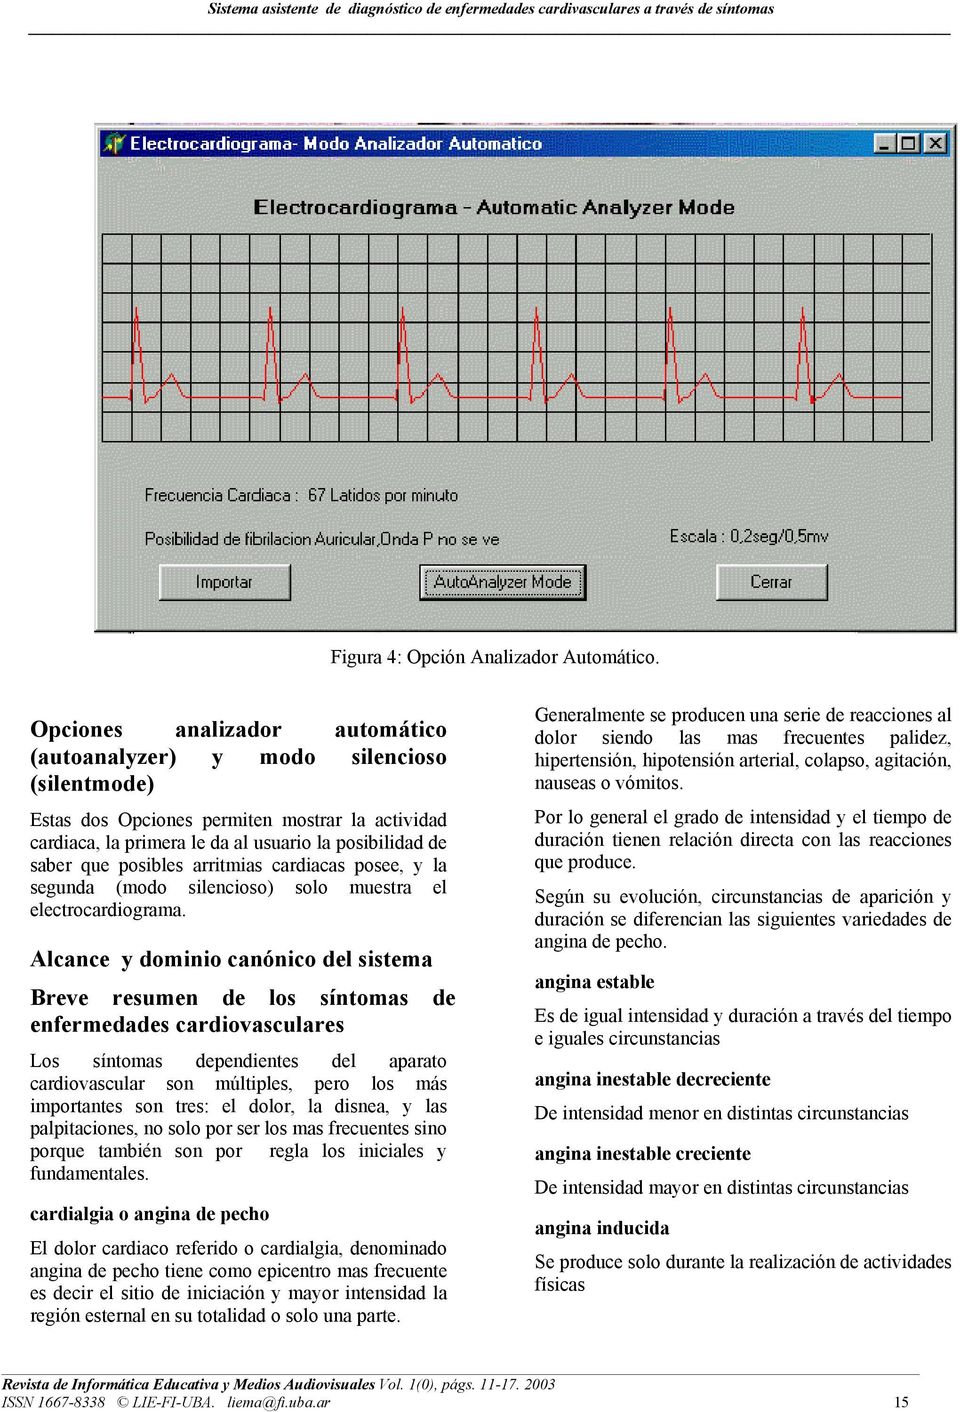 posibles arritmias cardiacas posee, y la segunda (modo silencioso) solo muestra el electrocardiograma.